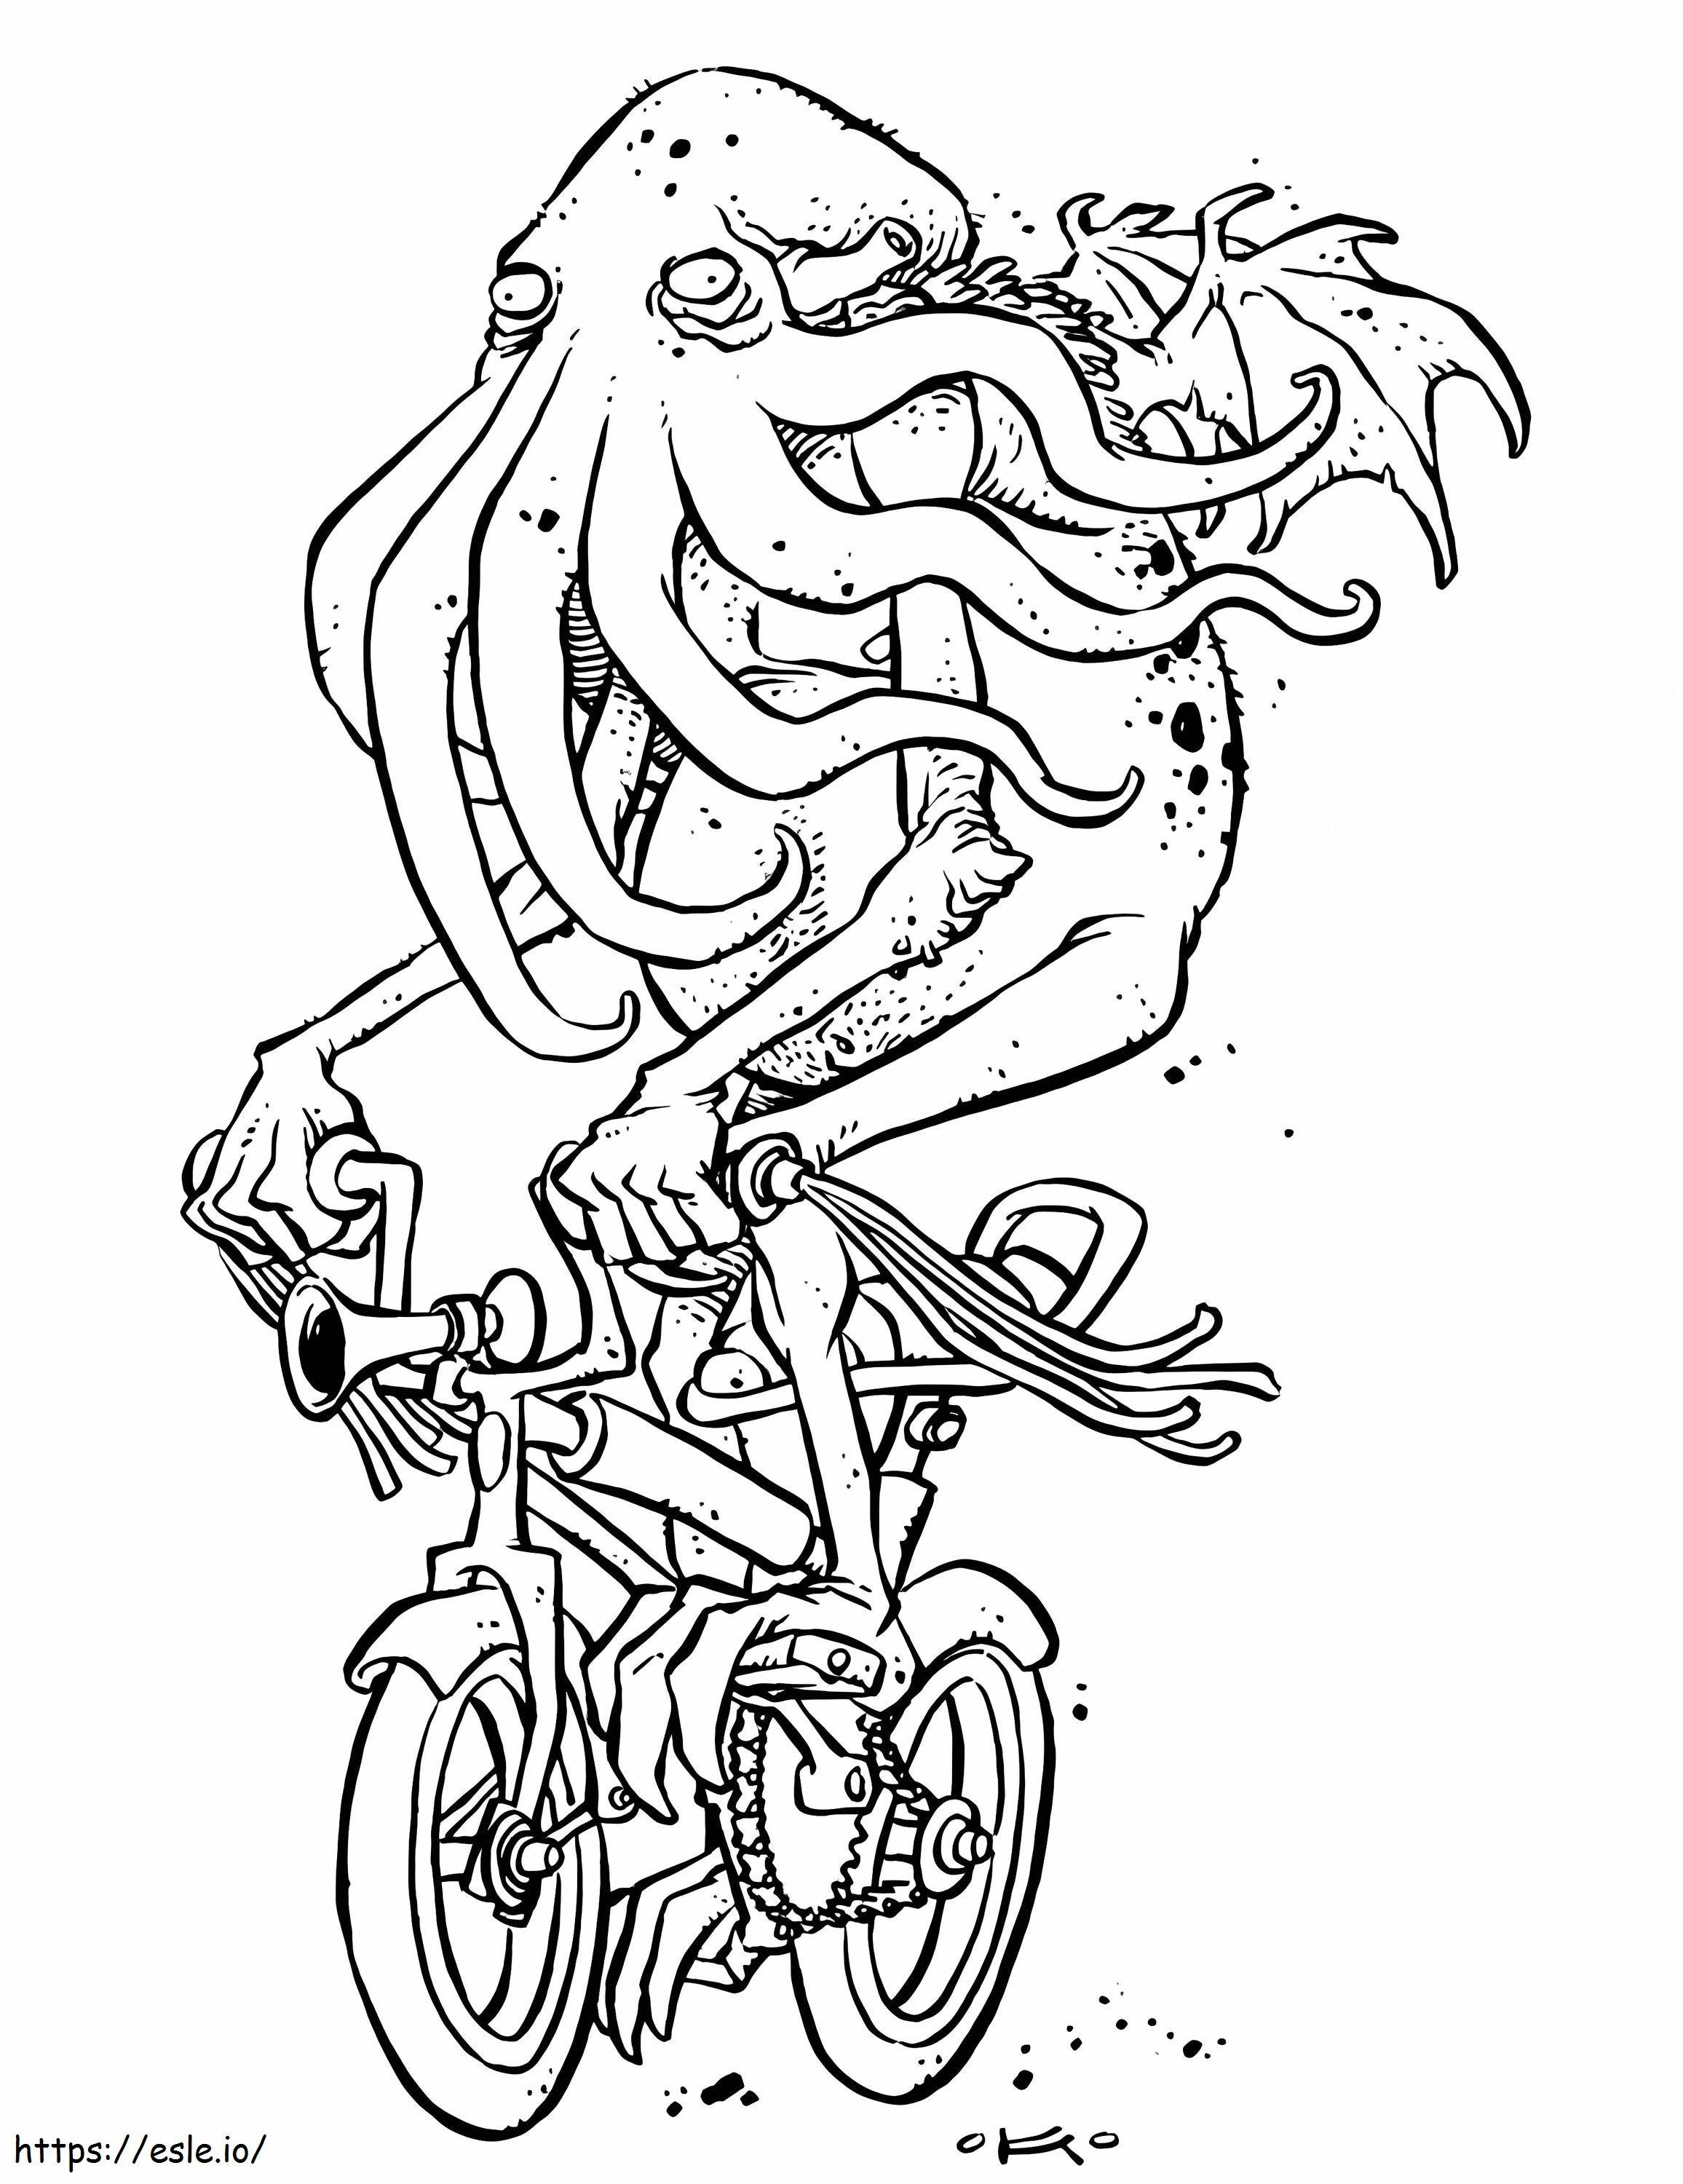 Cthulhu andando de bicicleta para colorir